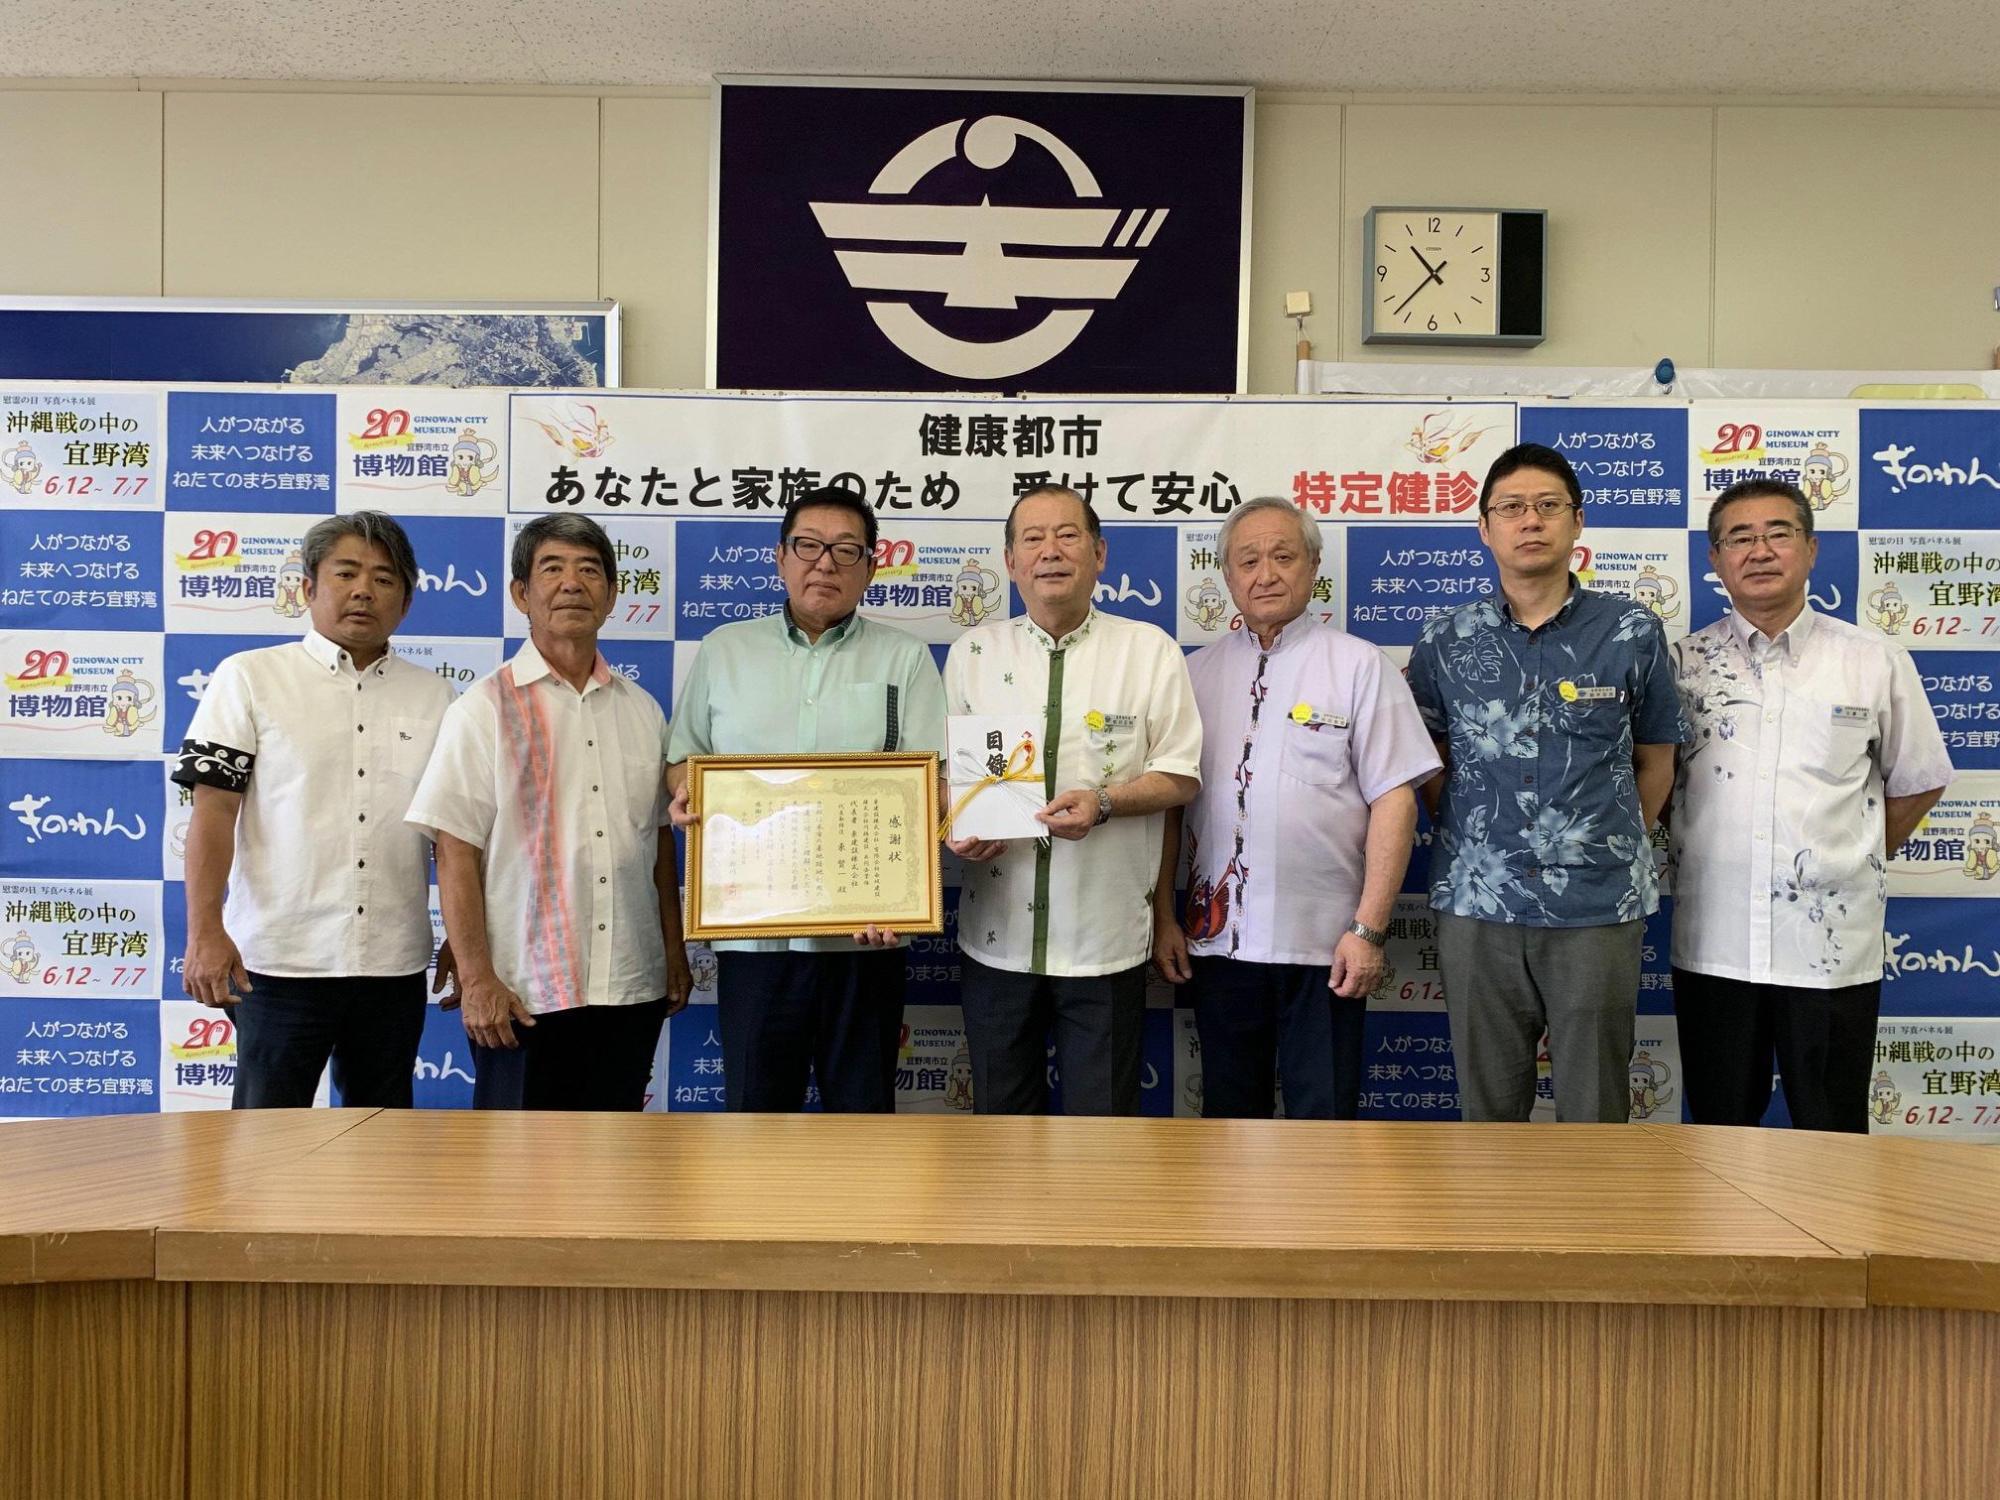 目録を持っている松川市長と額縁に入った賞状を持っている男性の横に5名の関係者の方々が写っている集合写真